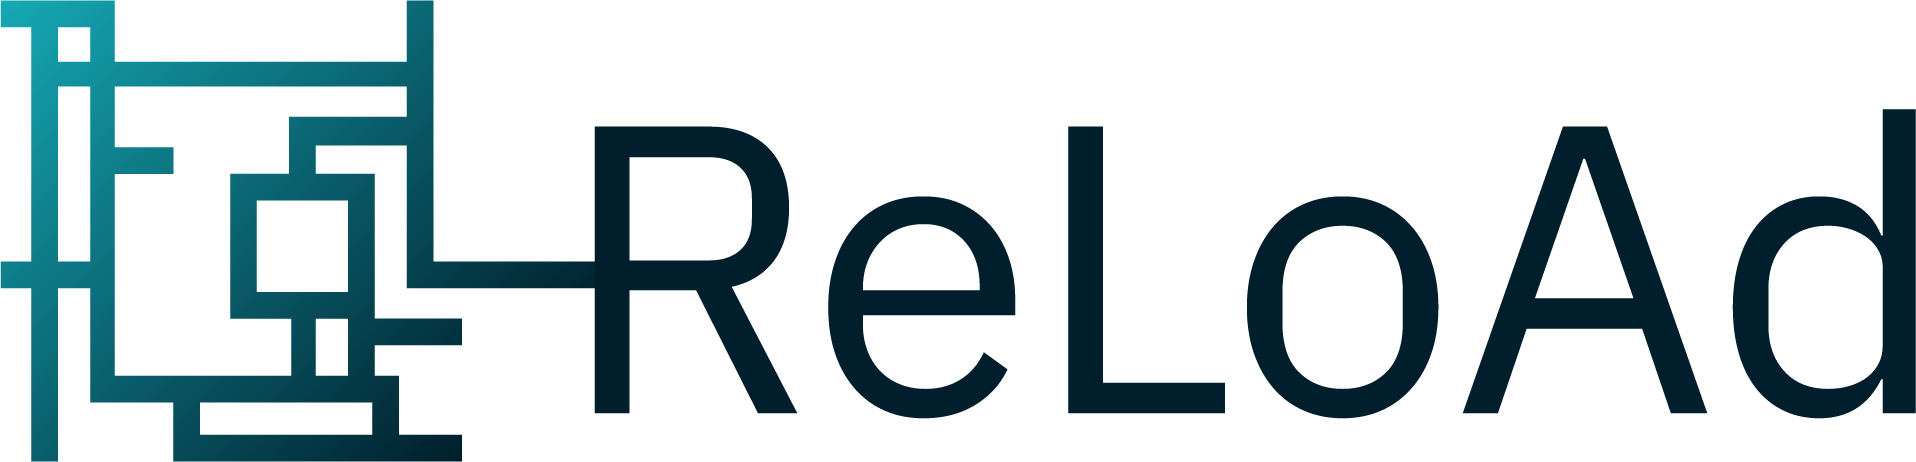 ReLoAd Icon und Logo